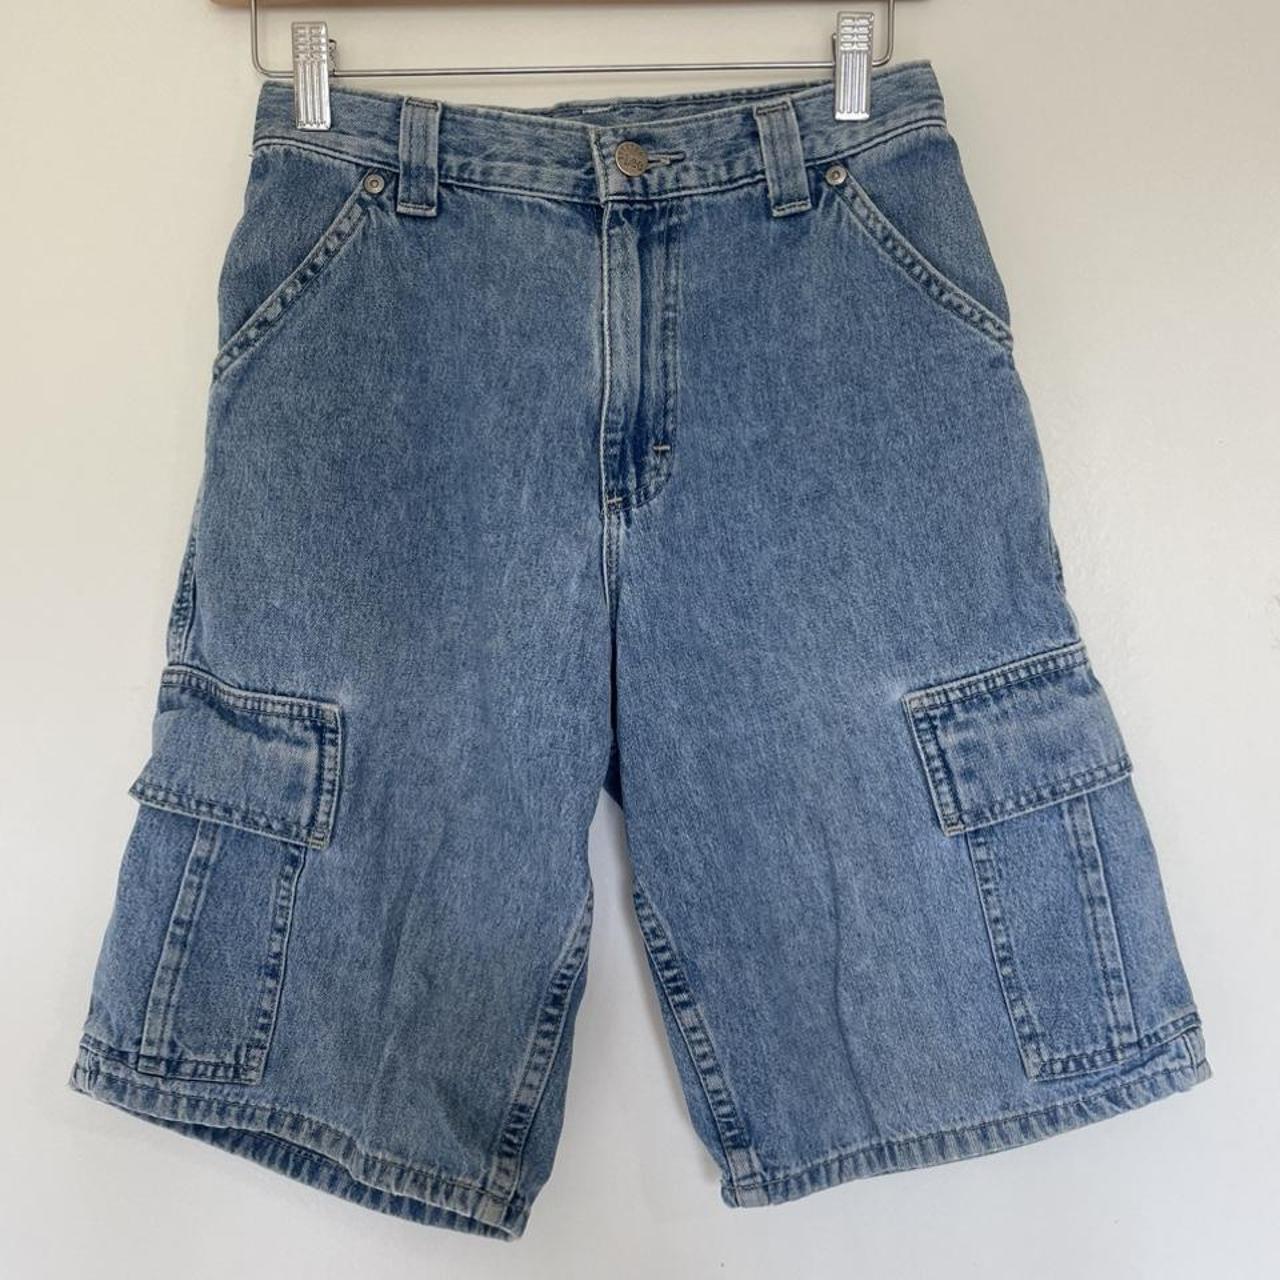 Vintage 90s Lee Pipes denim cargo shorts jeans size... - Depop